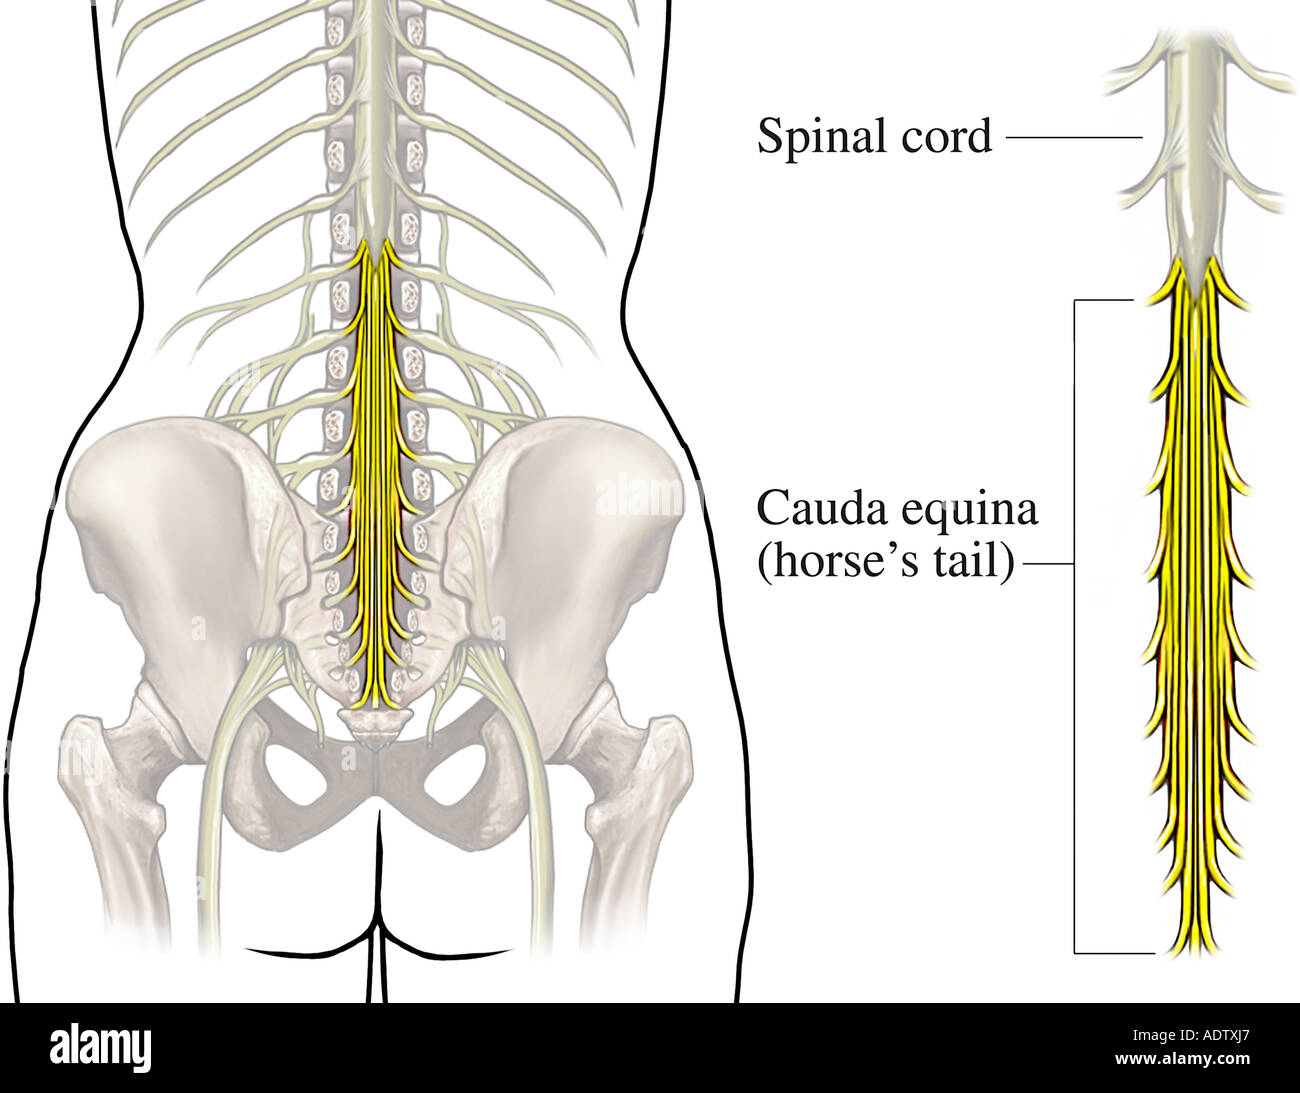 После операции на крестцовый отдел позвоночника. Пояснично-крестцовый отдел спинного мозга. Седалищный нерв и конский хвост. Конский хвост кауда эквина. Спинной мозг конский хвост седалищный нерв.